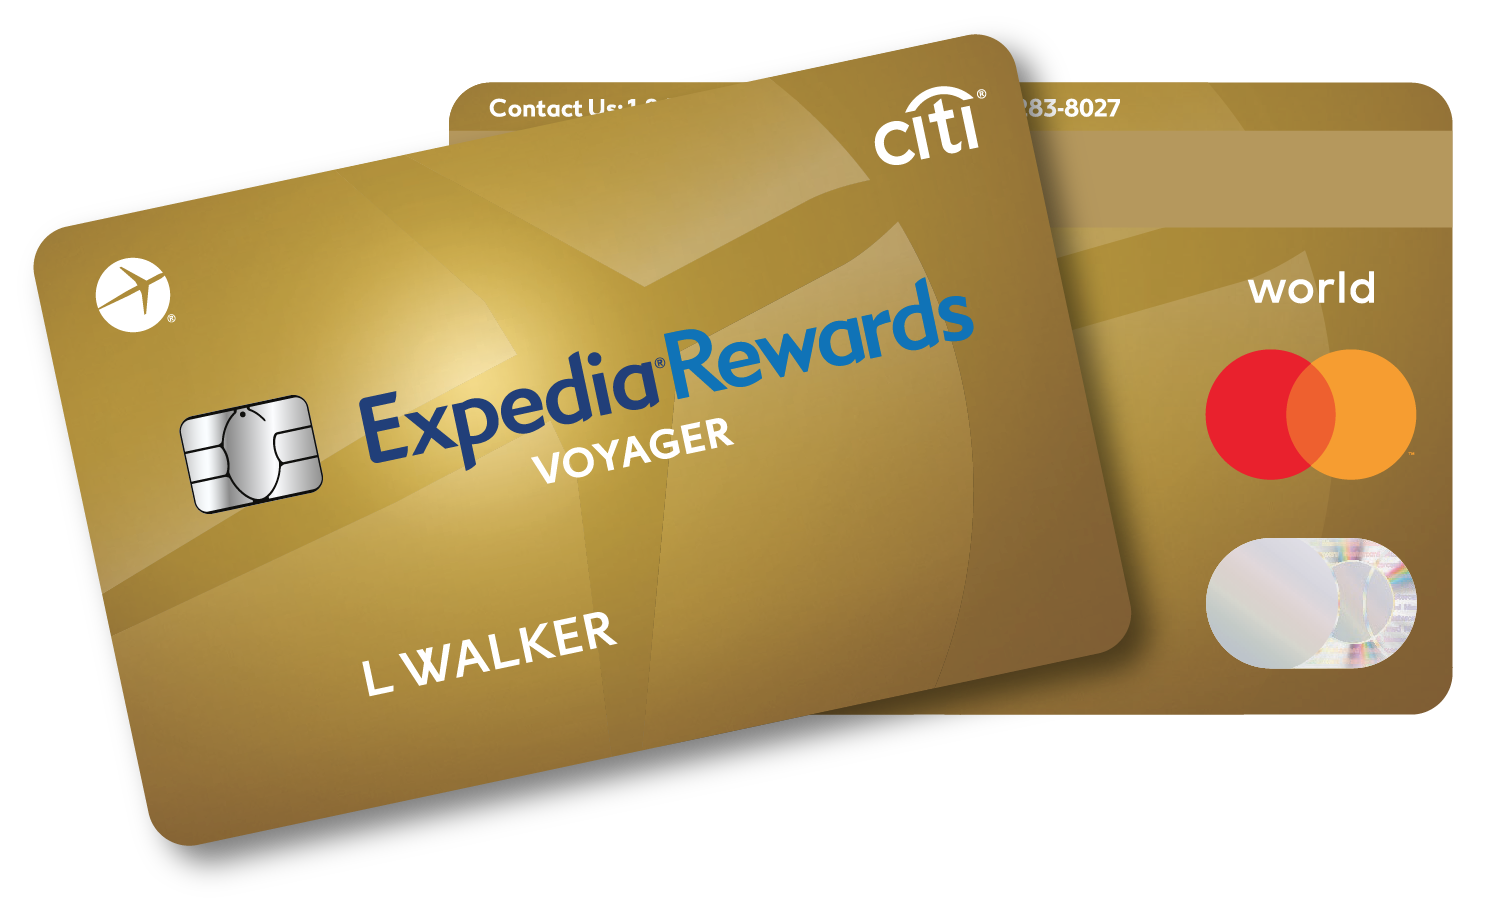 Citi Expedia Voyager Card bonus